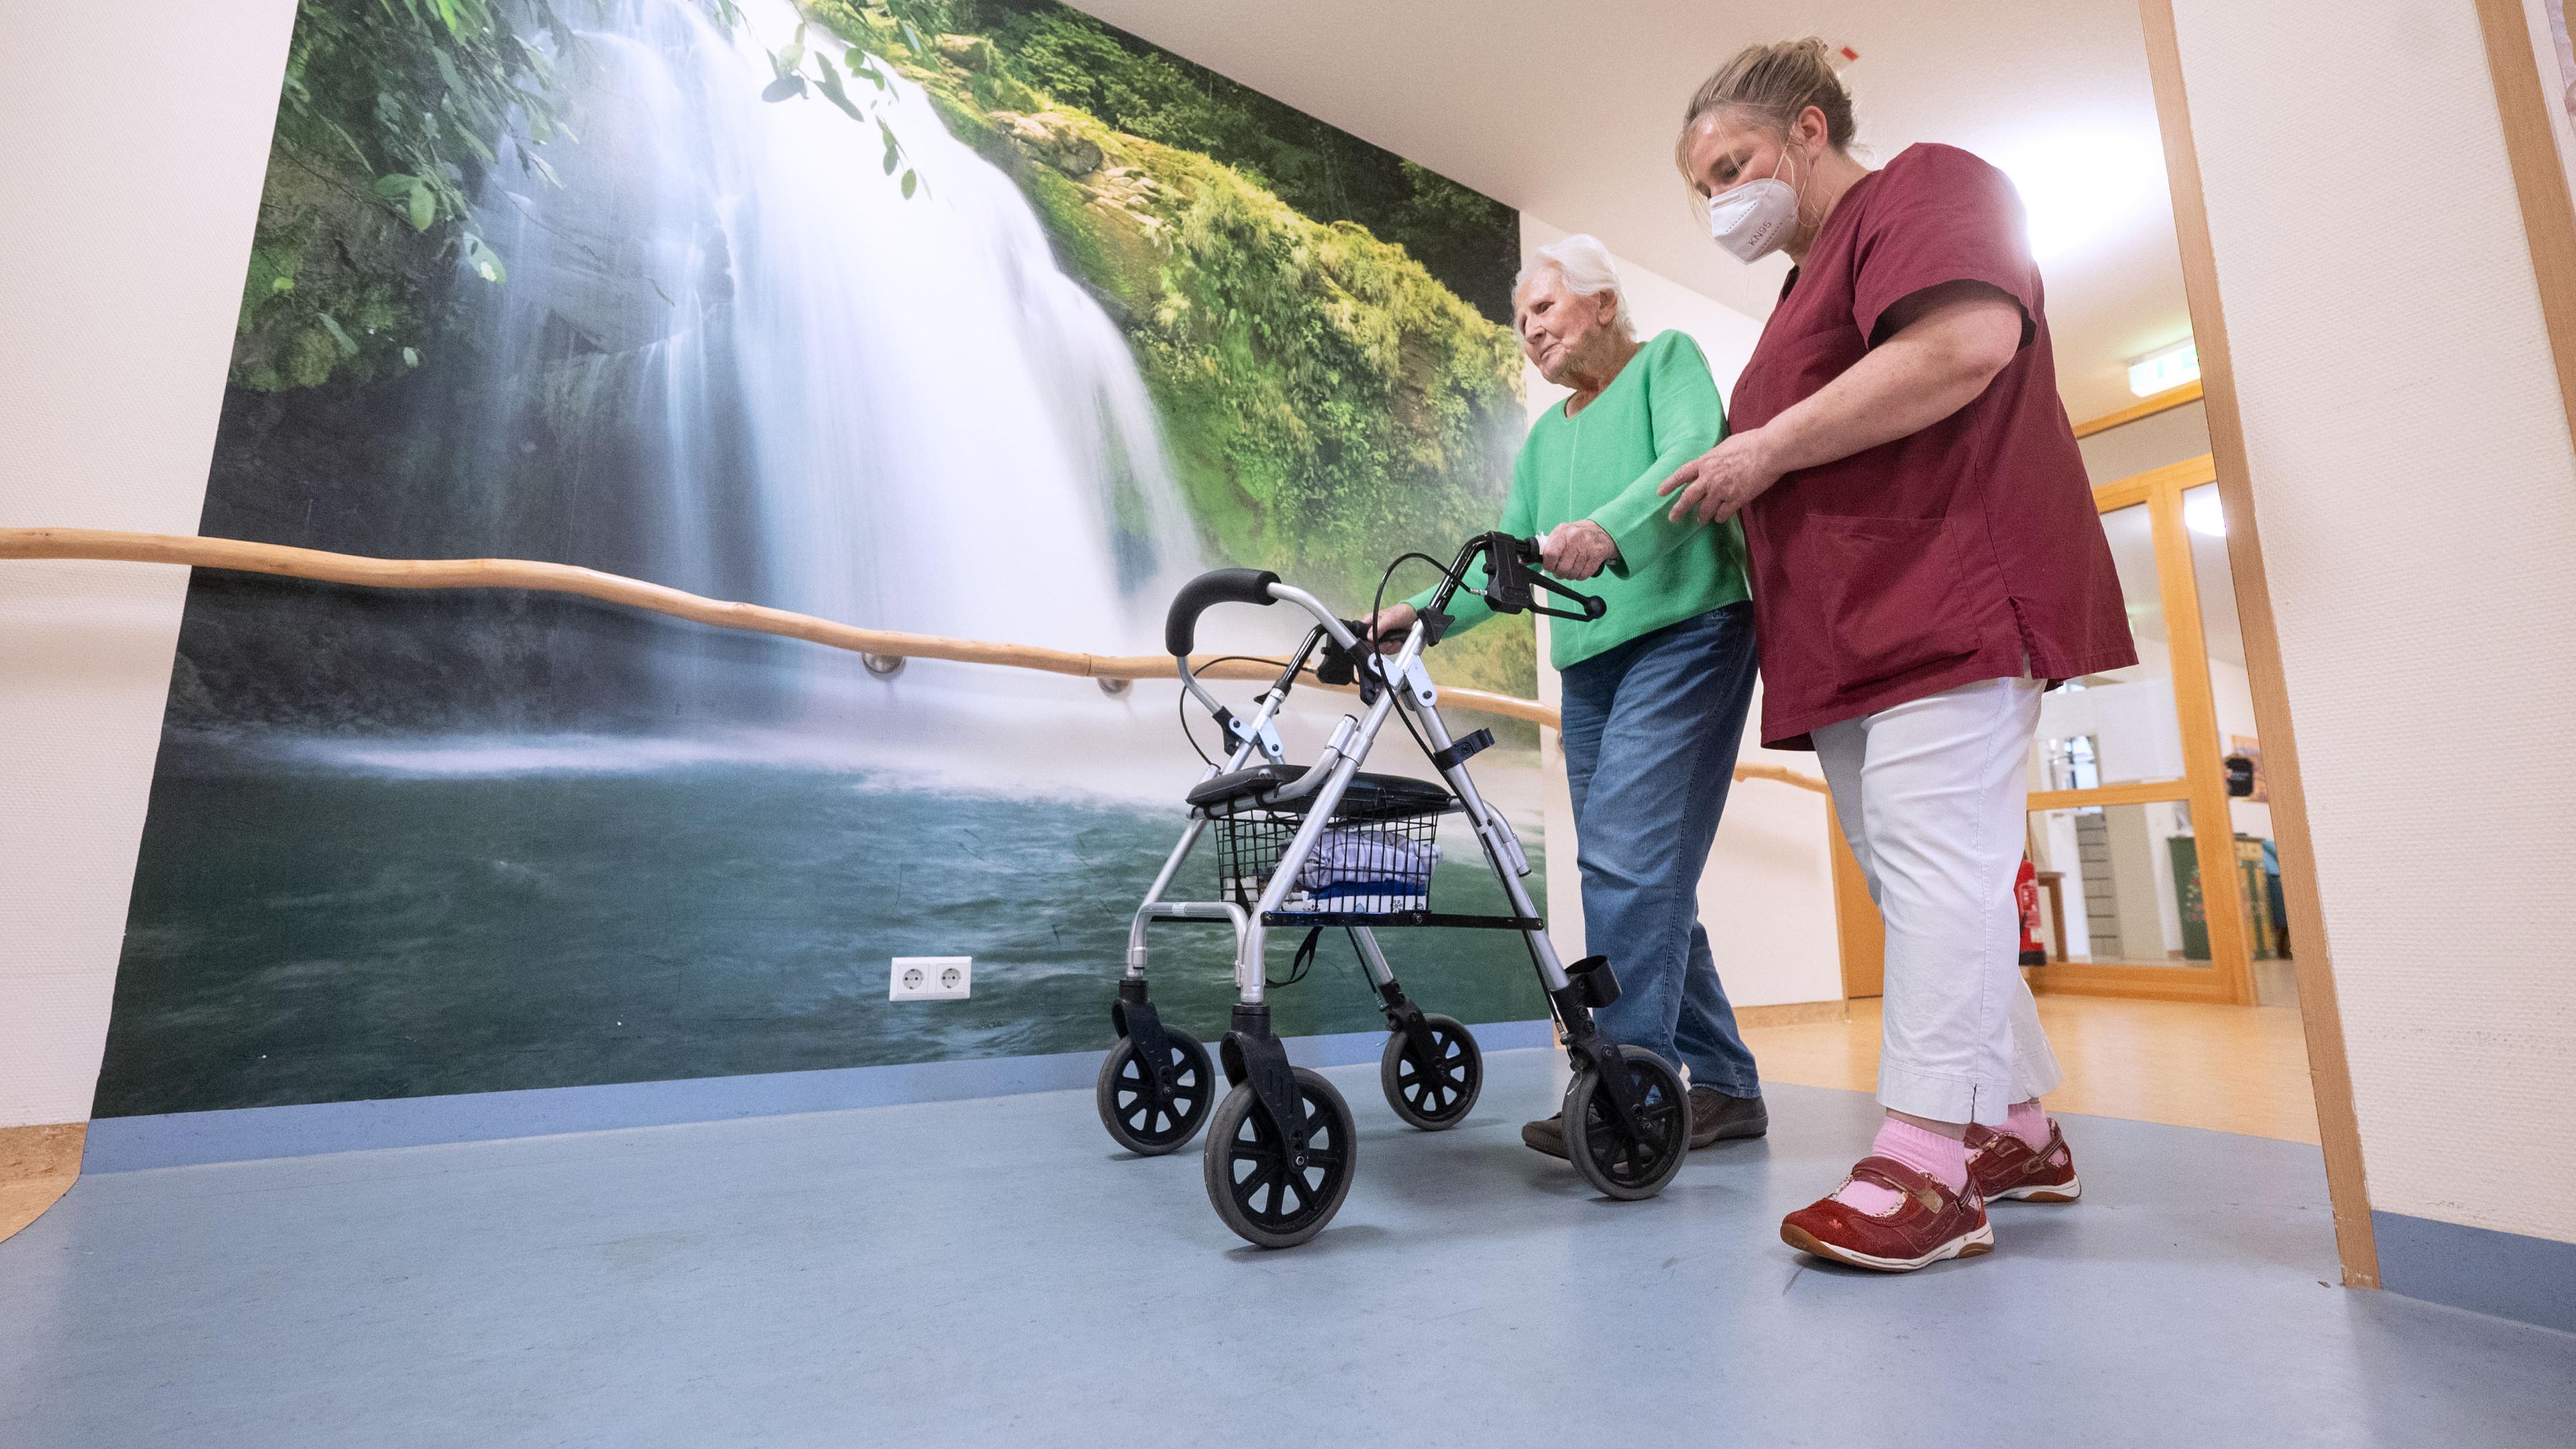 Eine Altenpflegerin hilft älterer Frau im Seniorenheim dabei, mit einem Rollator zu gehen. Im Hintergrund ist ein Bild von einem Wasserfall.